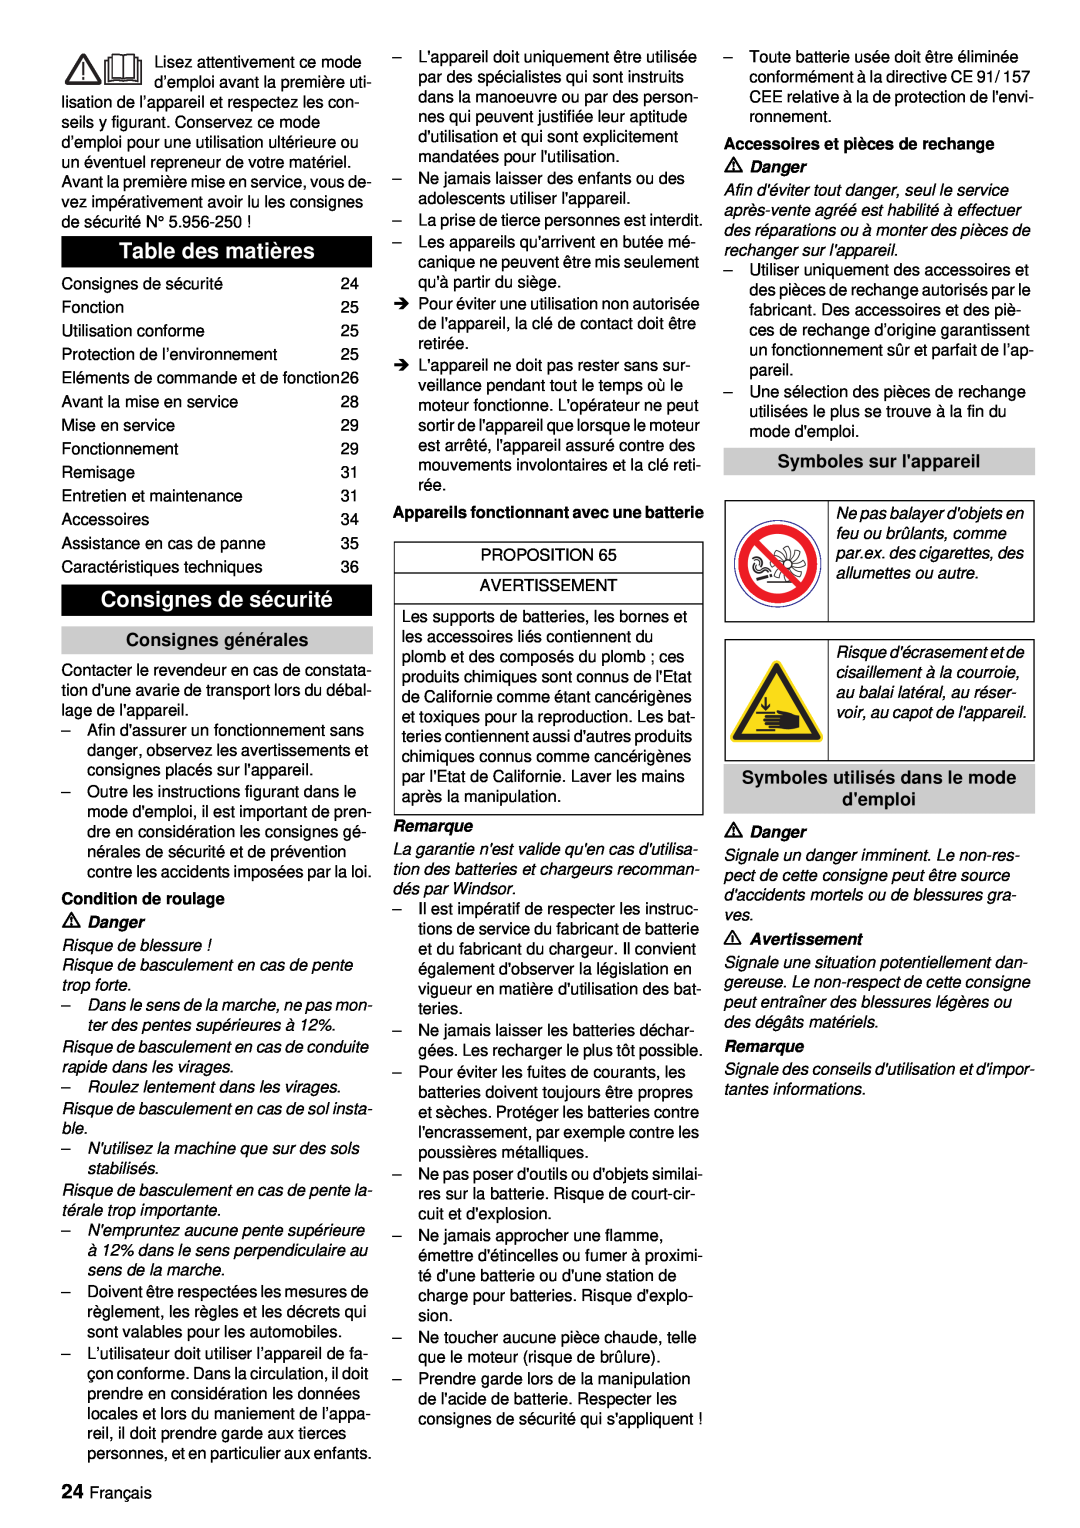 Windsor RRB 360 manual Table des matières, Consignes de sécurité, Consignes générales, Symboles sur lappareil 